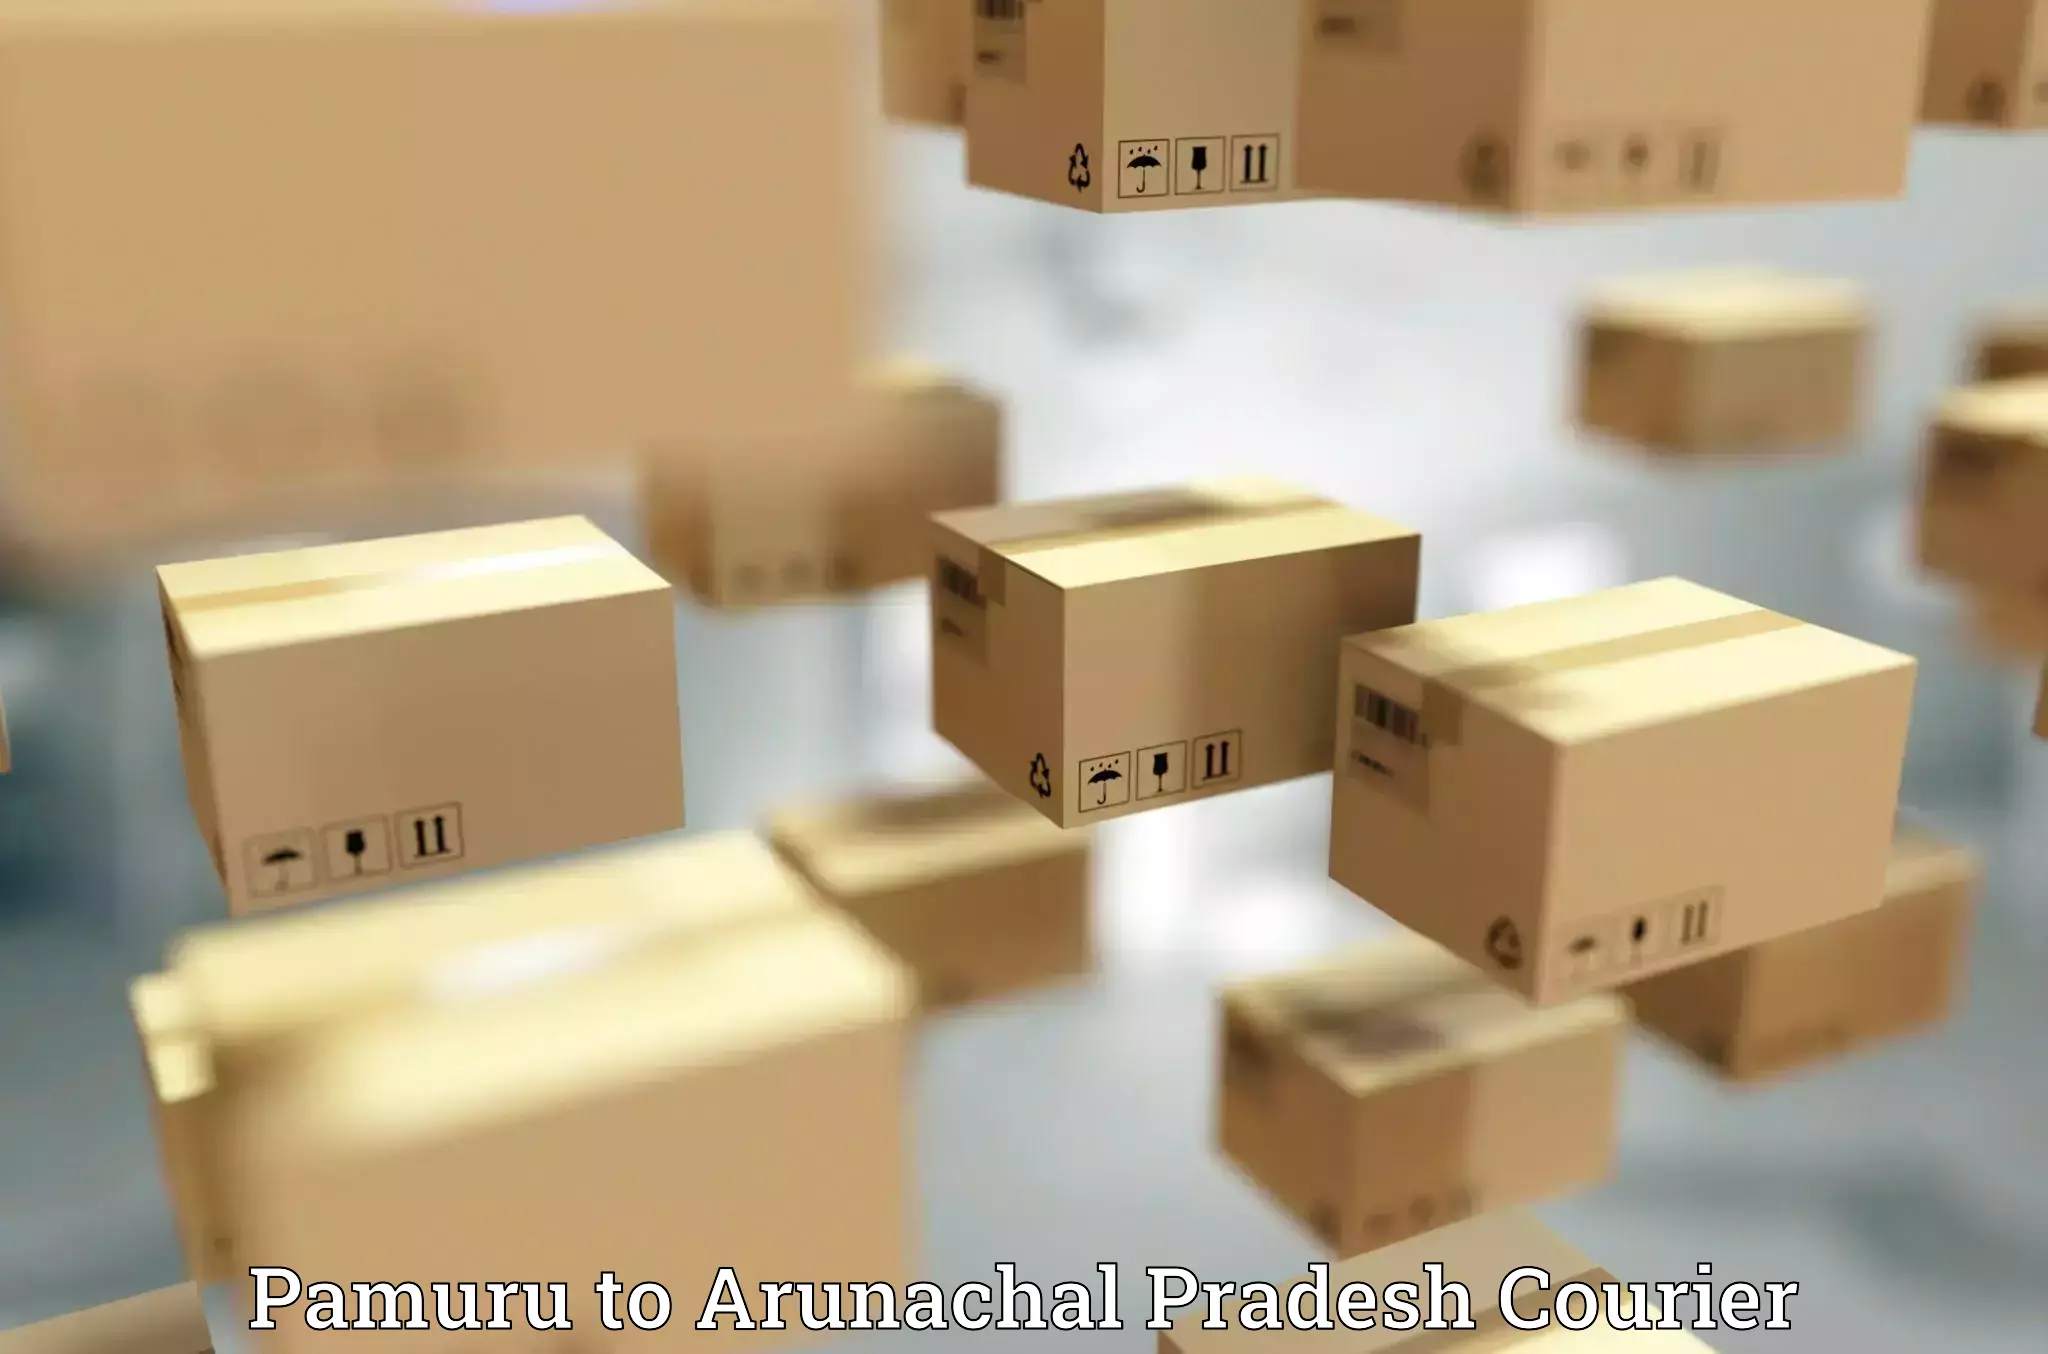 Round-the-clock parcel delivery Pamuru to Arunachal Pradesh